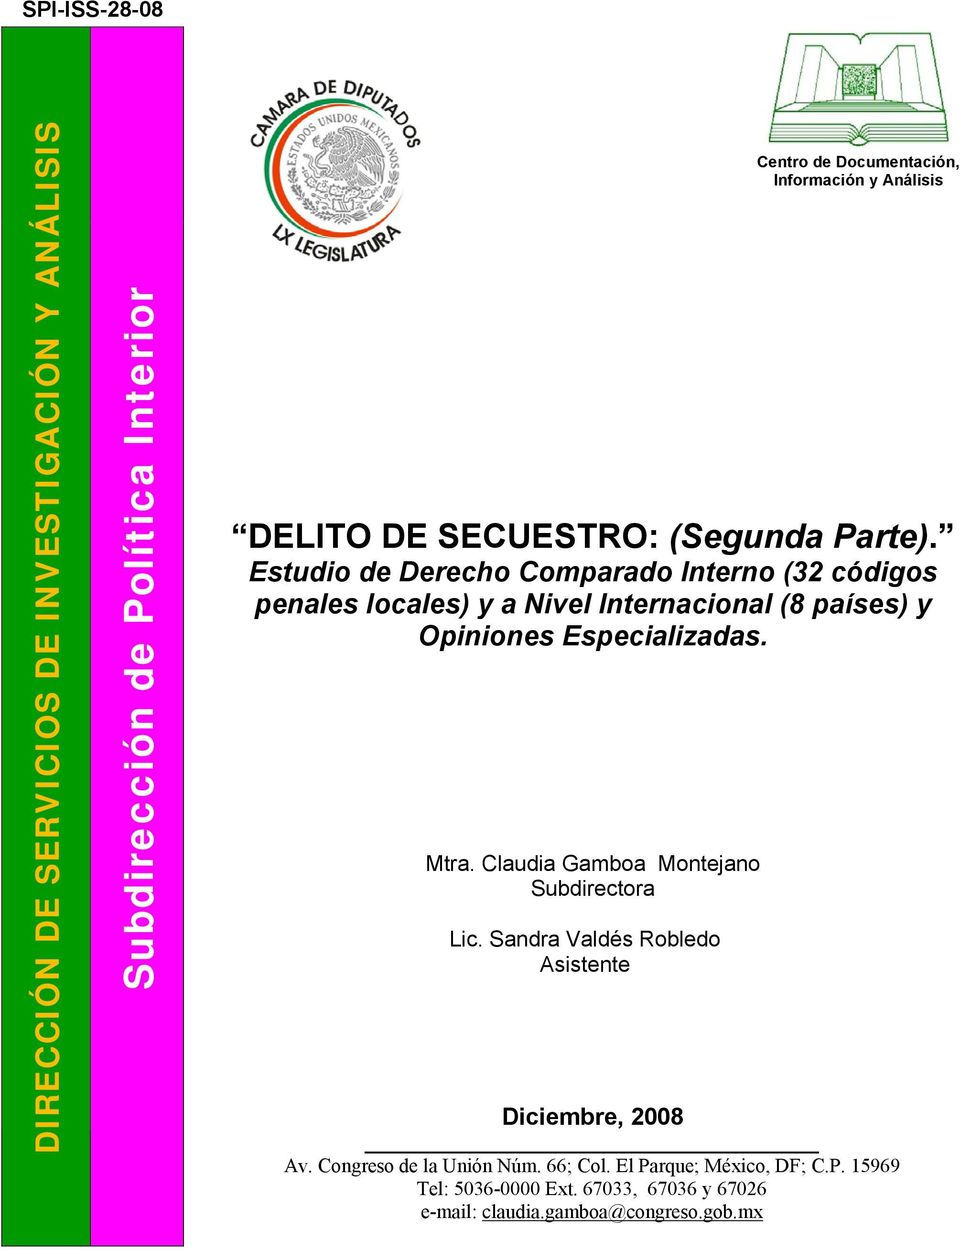 Estudio de Derecho Comparado Interno (32 códigos penales locales) y a Nivel Internacional (8 países) y Opiniones Especializadas. Mtra.